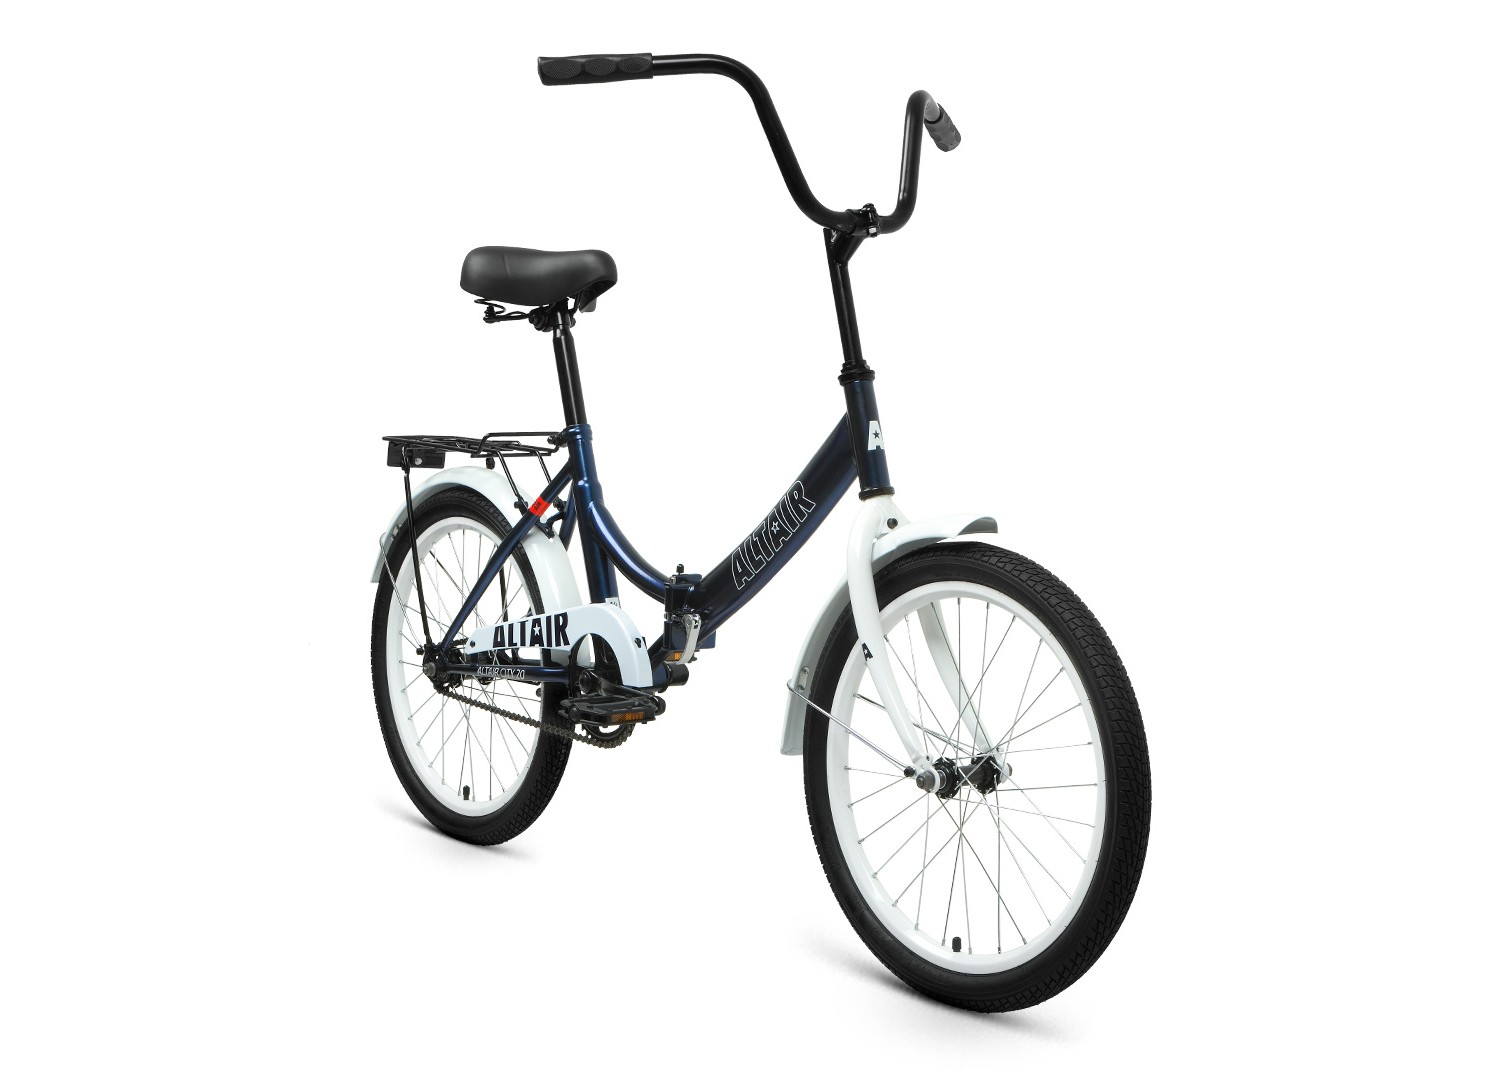 Складной велосипед Altair City 20, год 2022, цвет Синий-Белый, ростовка 14